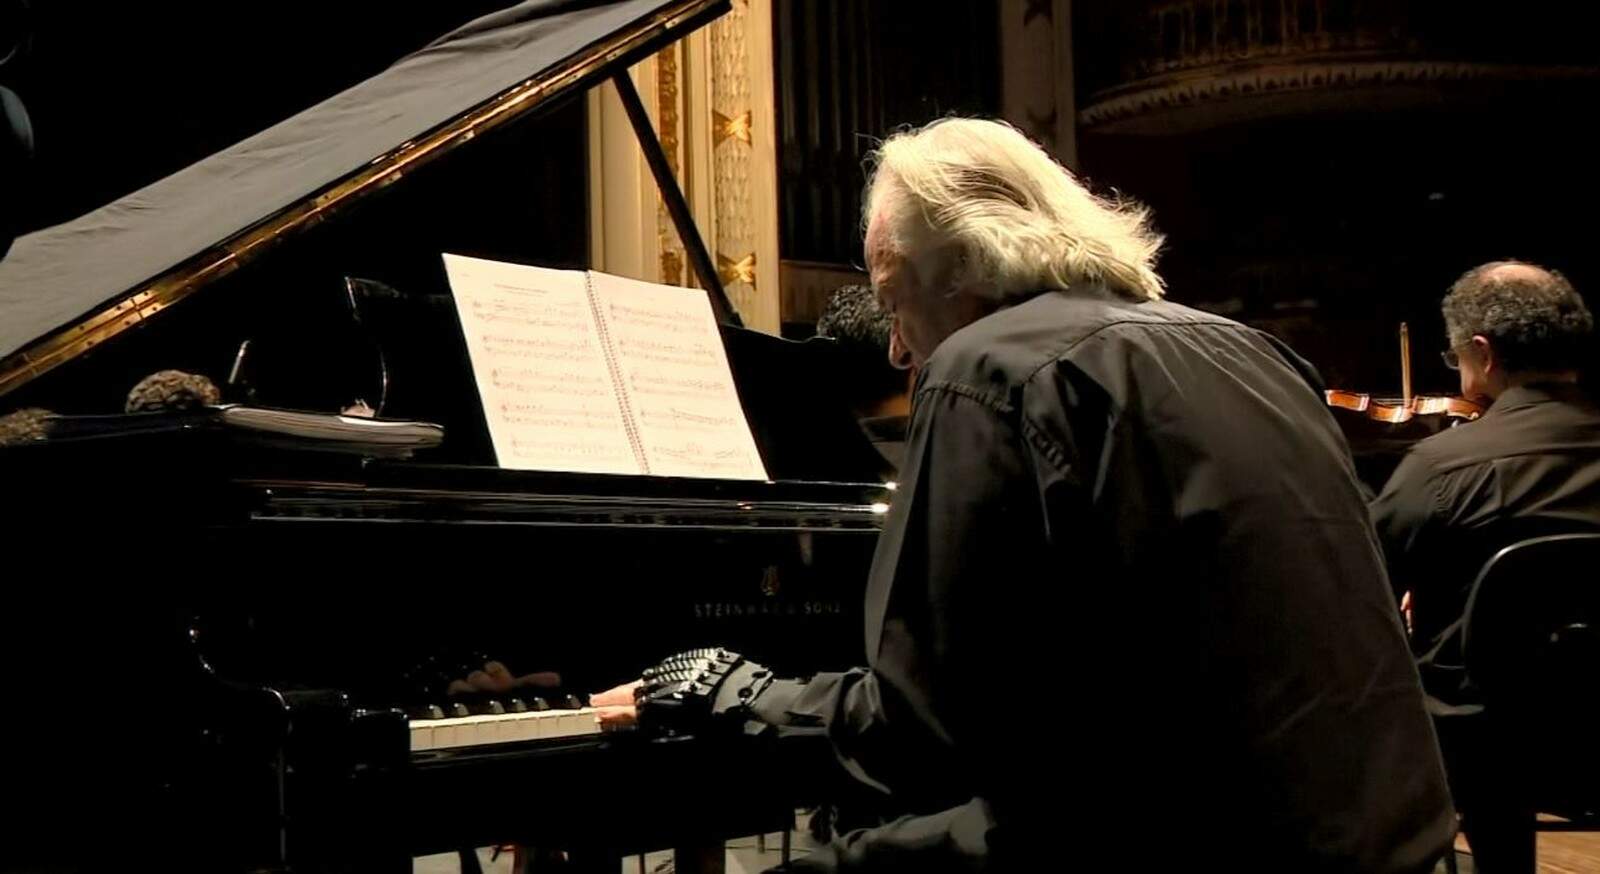 Luva biônica permitiu que maestro pudesse tocar piano apesar de problemas de saúde terem afetado movimentos das mãos 